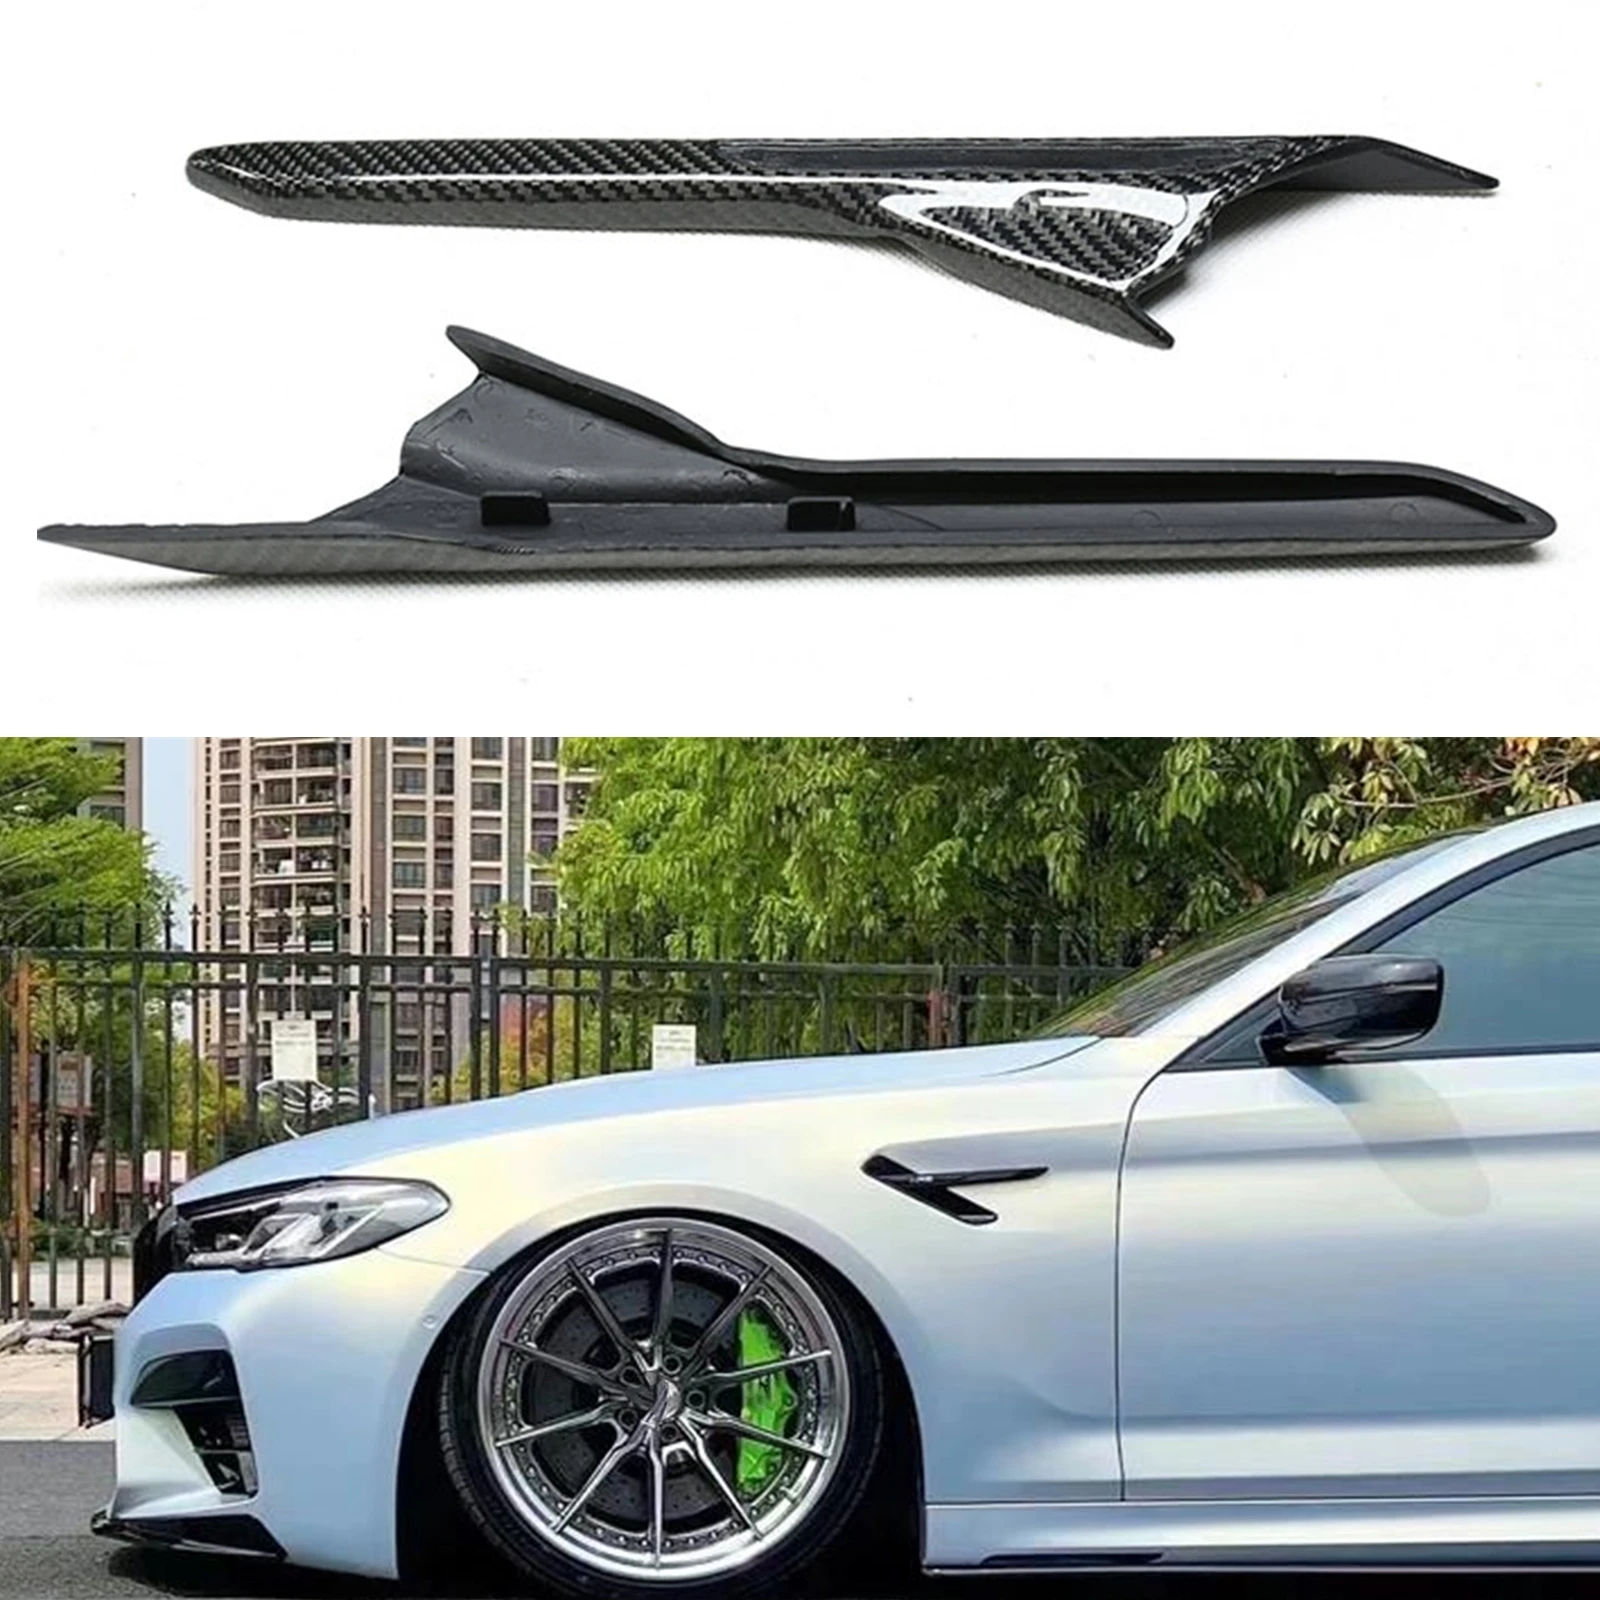 

2PCS Real Carbon Fiber Side Fender Fin Air Vent Trim Sticker Decoration Auto Part For BMW F90 M5 2018 2019 2020 2021 2022